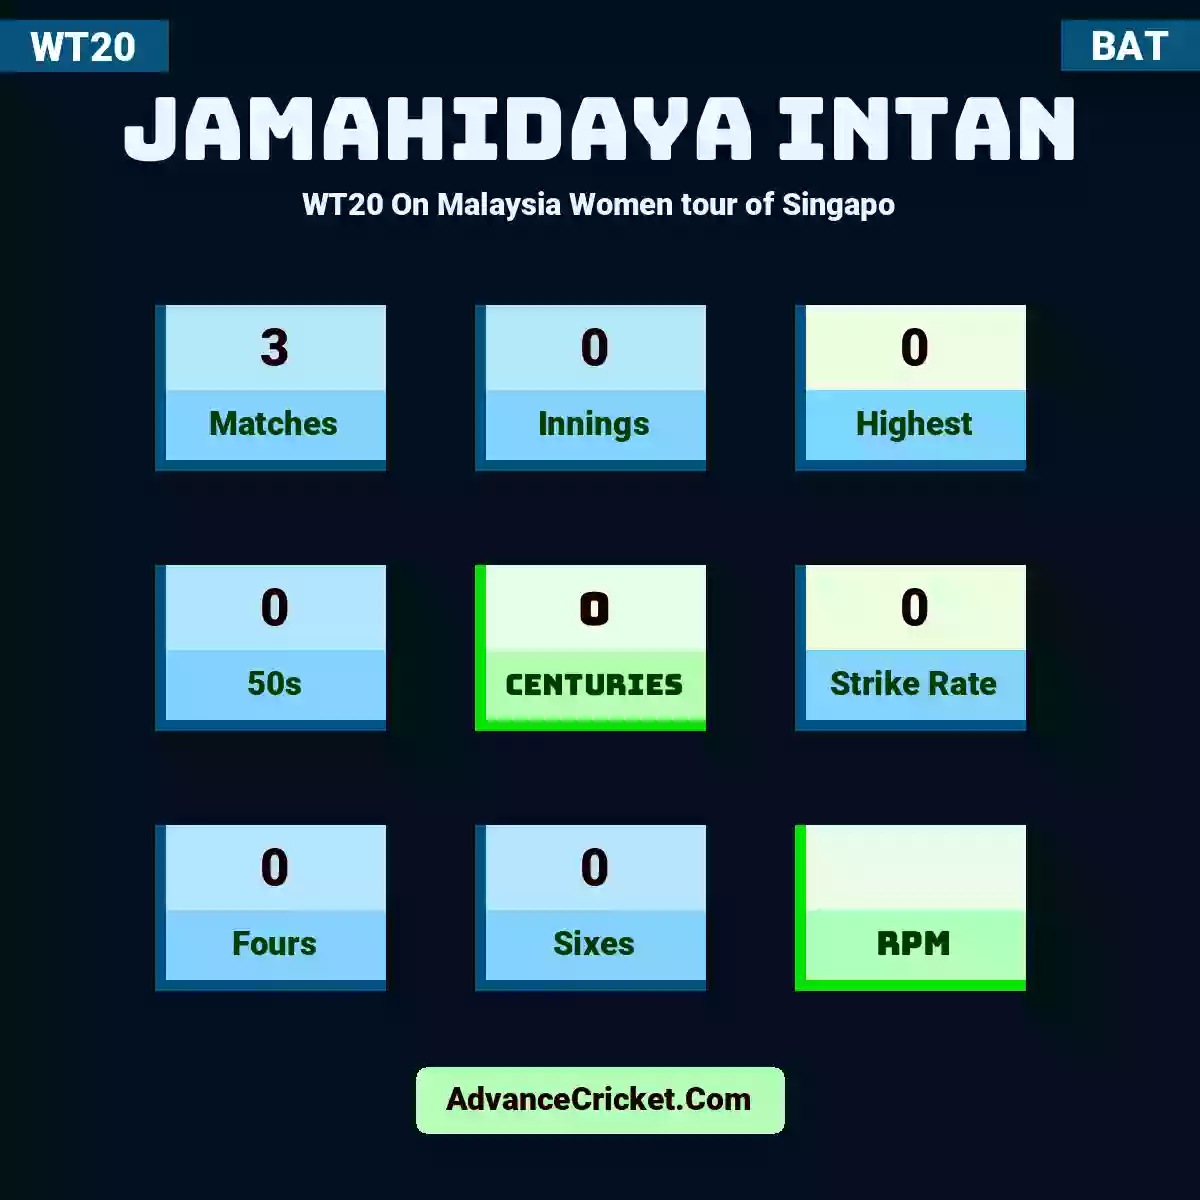 Jamahidaya Intan WT20  On Malaysia Women tour of Singapo, Jamahidaya Intan played 3 matches, scored 0 runs as highest, 0 half-centuries, and 0 centuries, with a strike rate of 0. J.Intan hit 0 fours and 0 sixes.